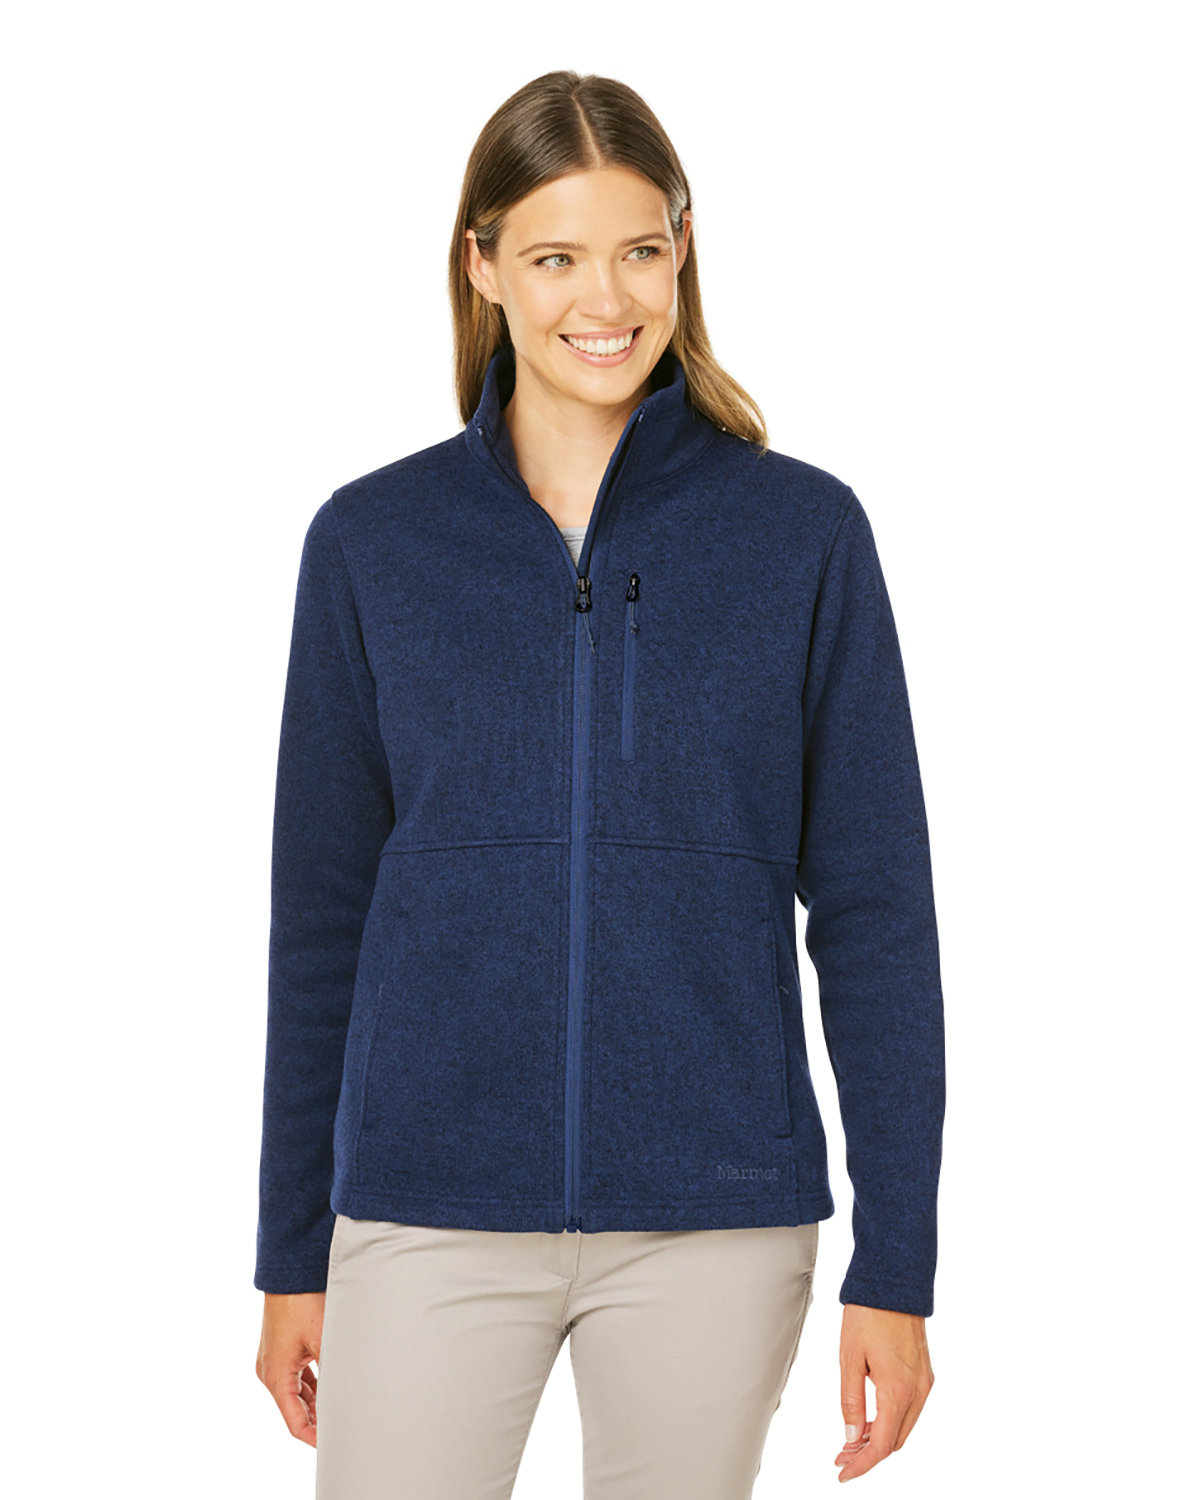 Marmot Ladies' Dropline Sweater Fleece Jacket ARCTIC NAVY 